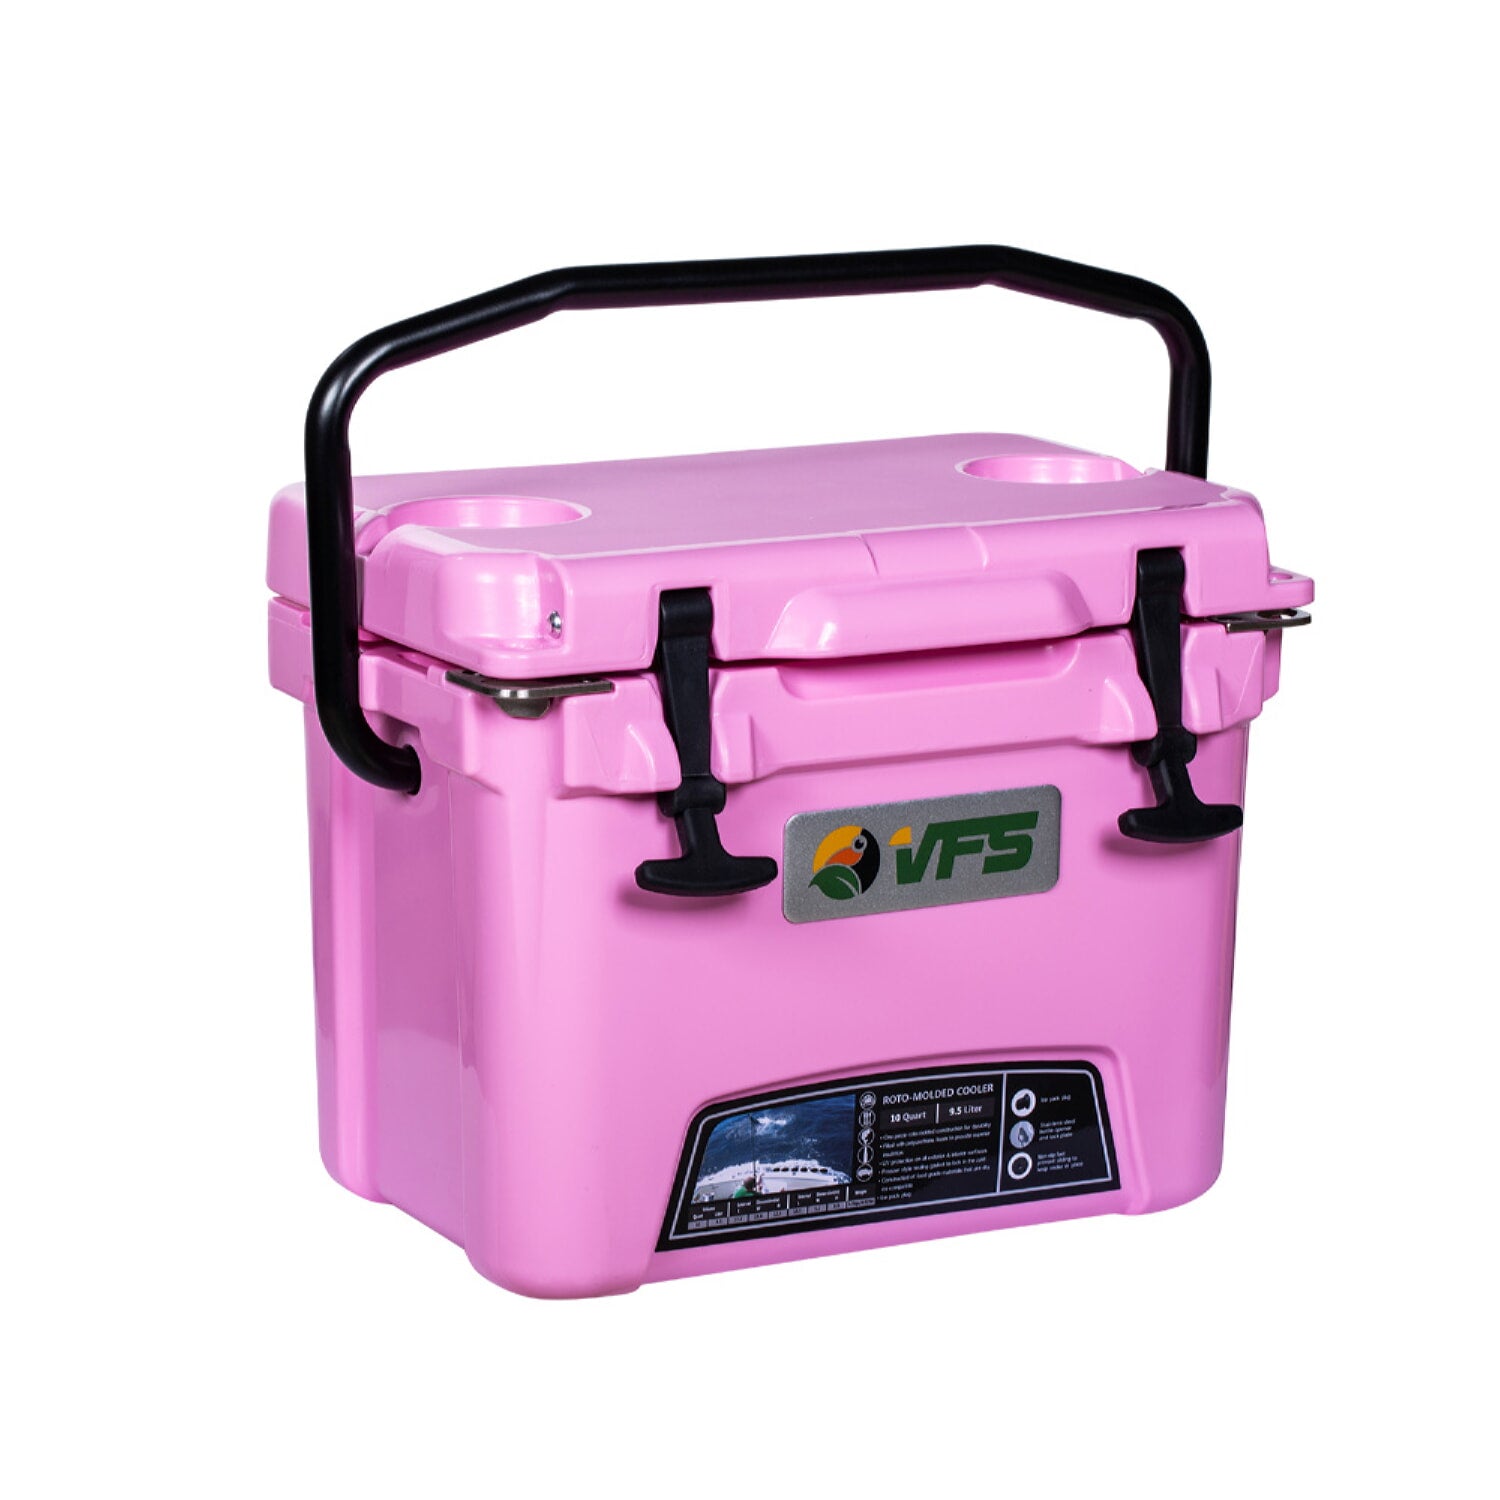 Cooler 10Qt - (Rosado/Pink)